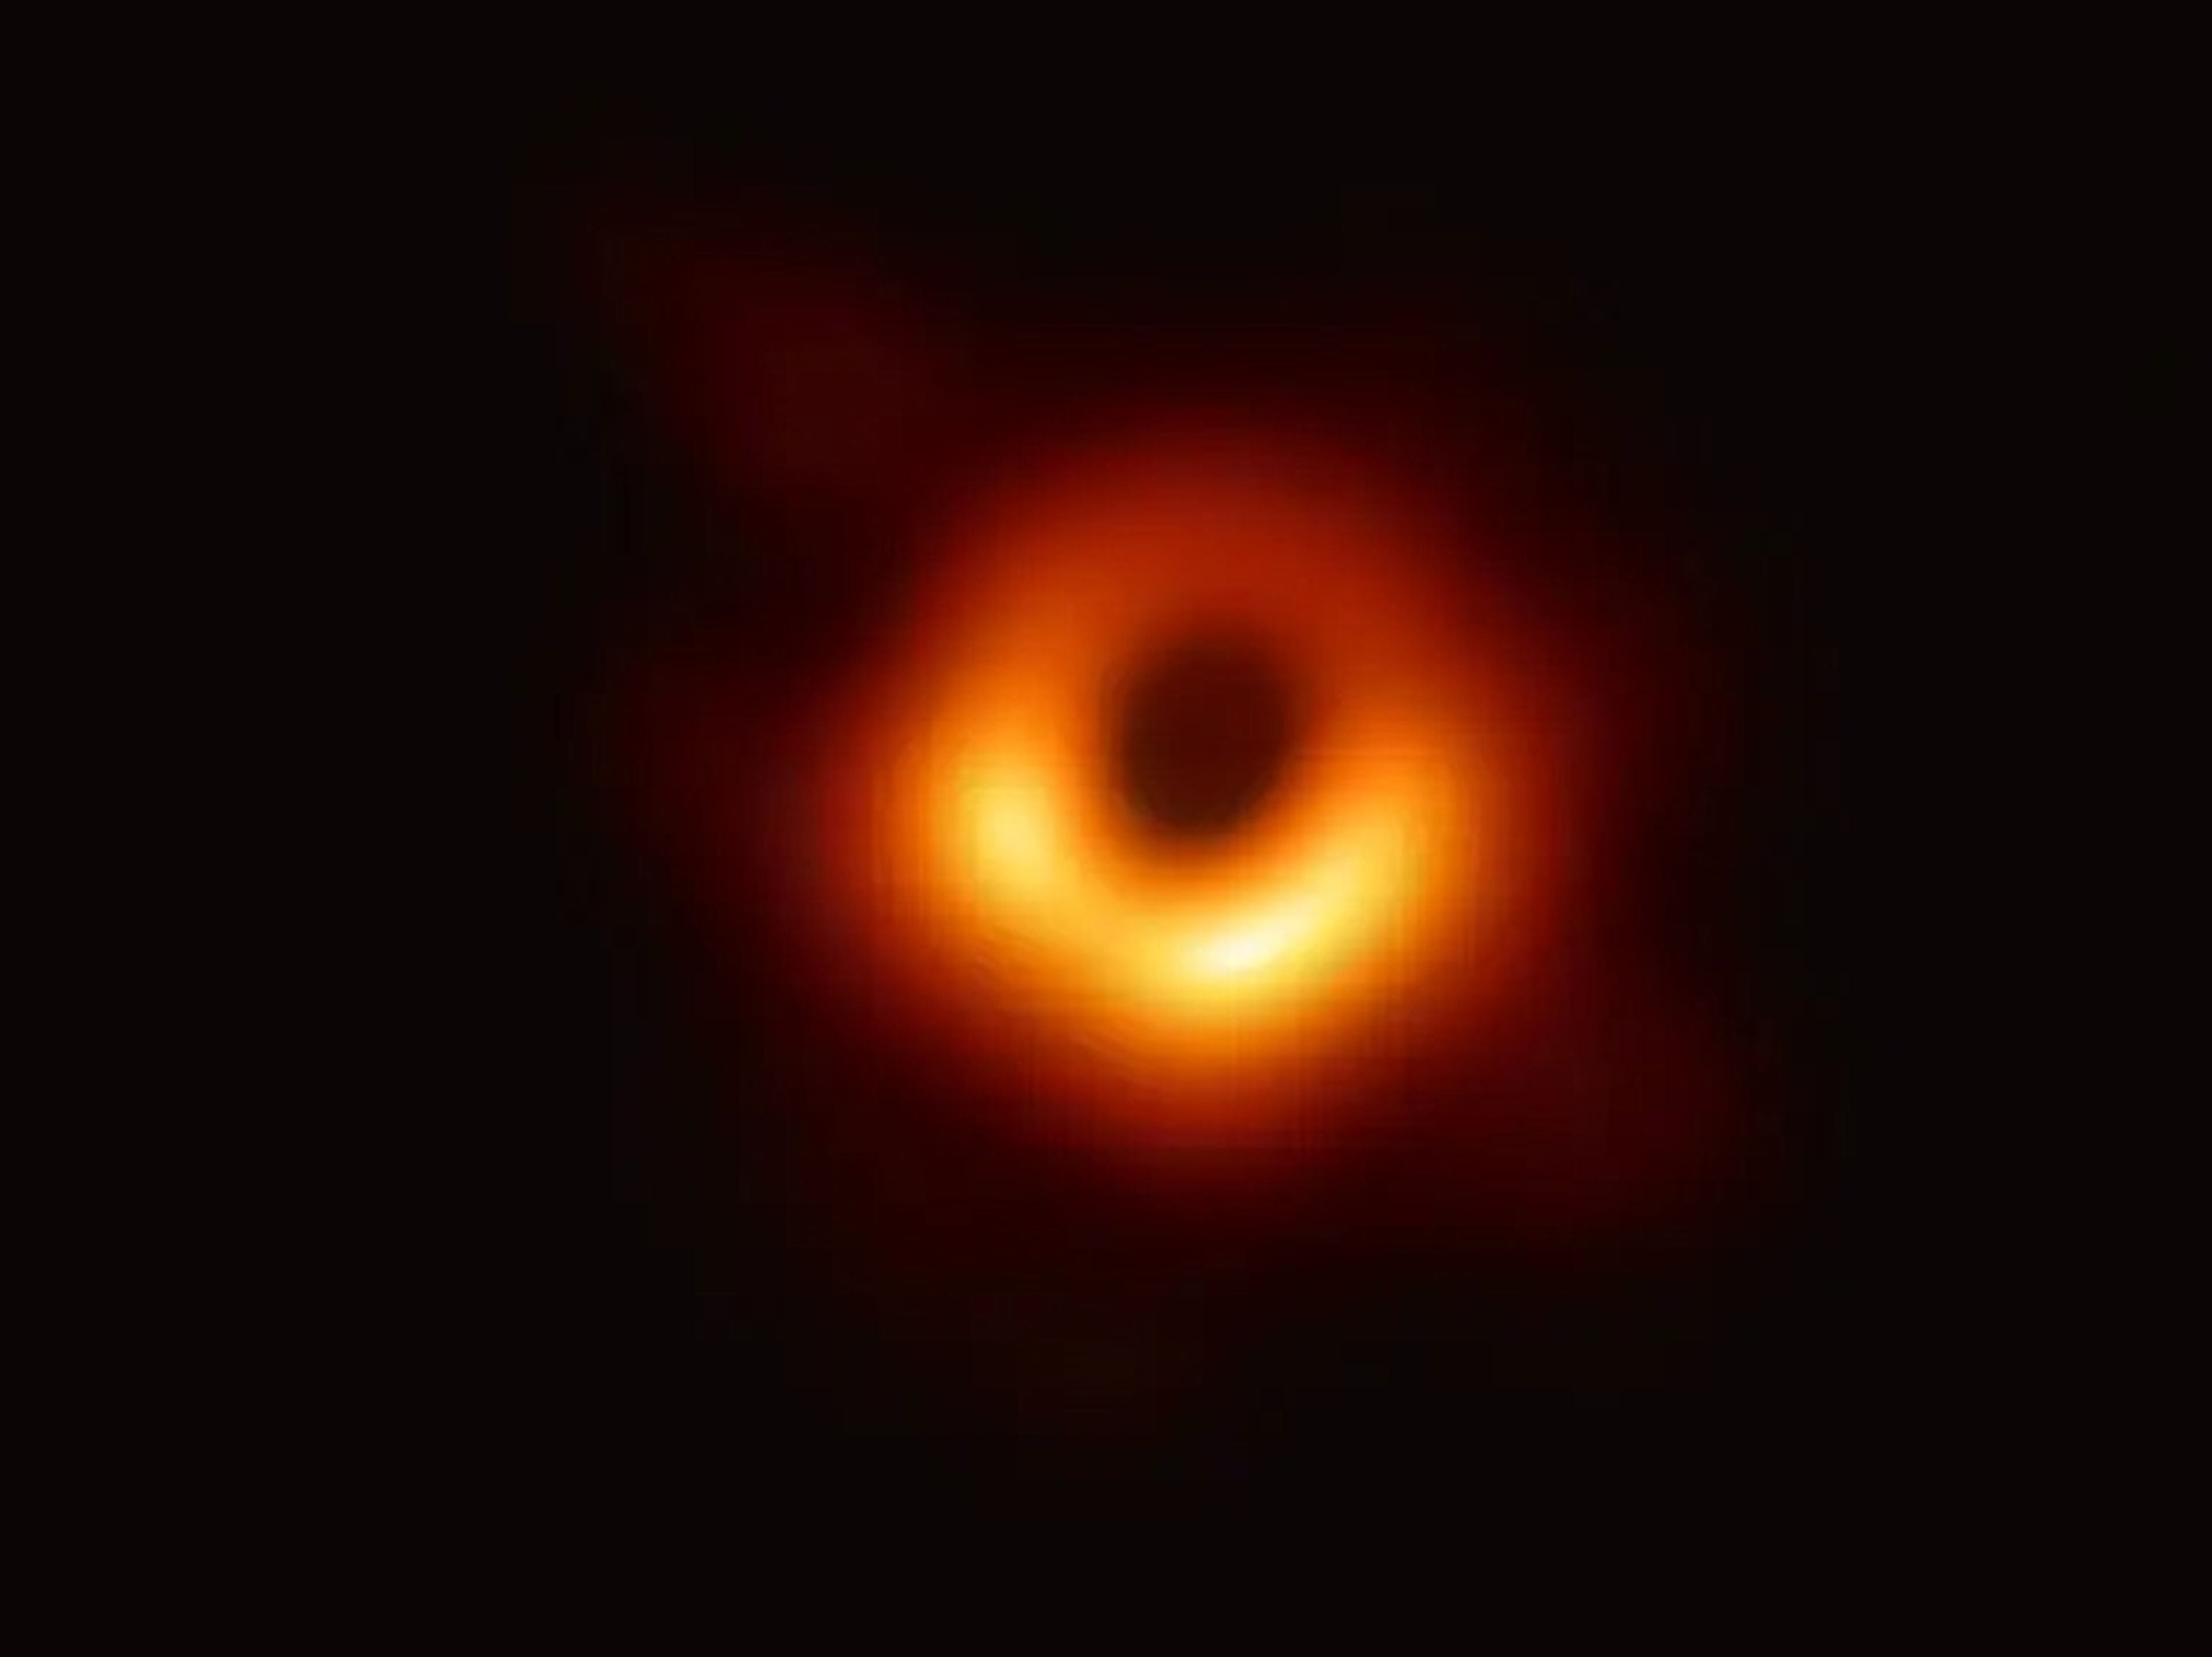 La primera imagen de un agujero negro. El anillo naranja es una nube de material sobrecalentado que es succionado por el agujero negro.